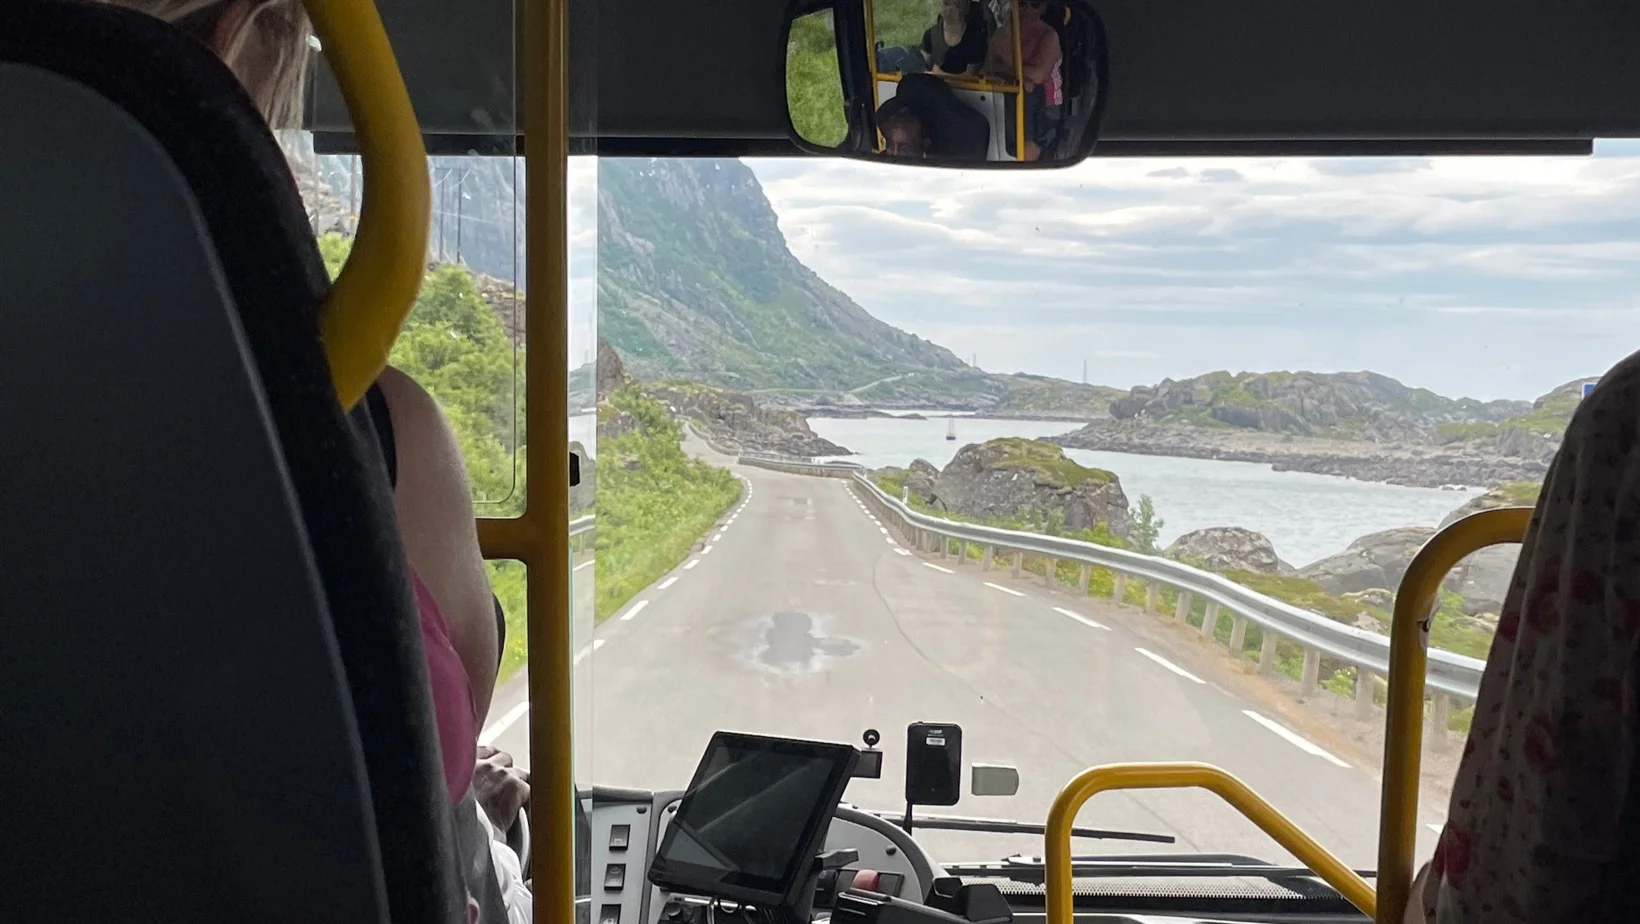 Onboard a bus in Lofoten.